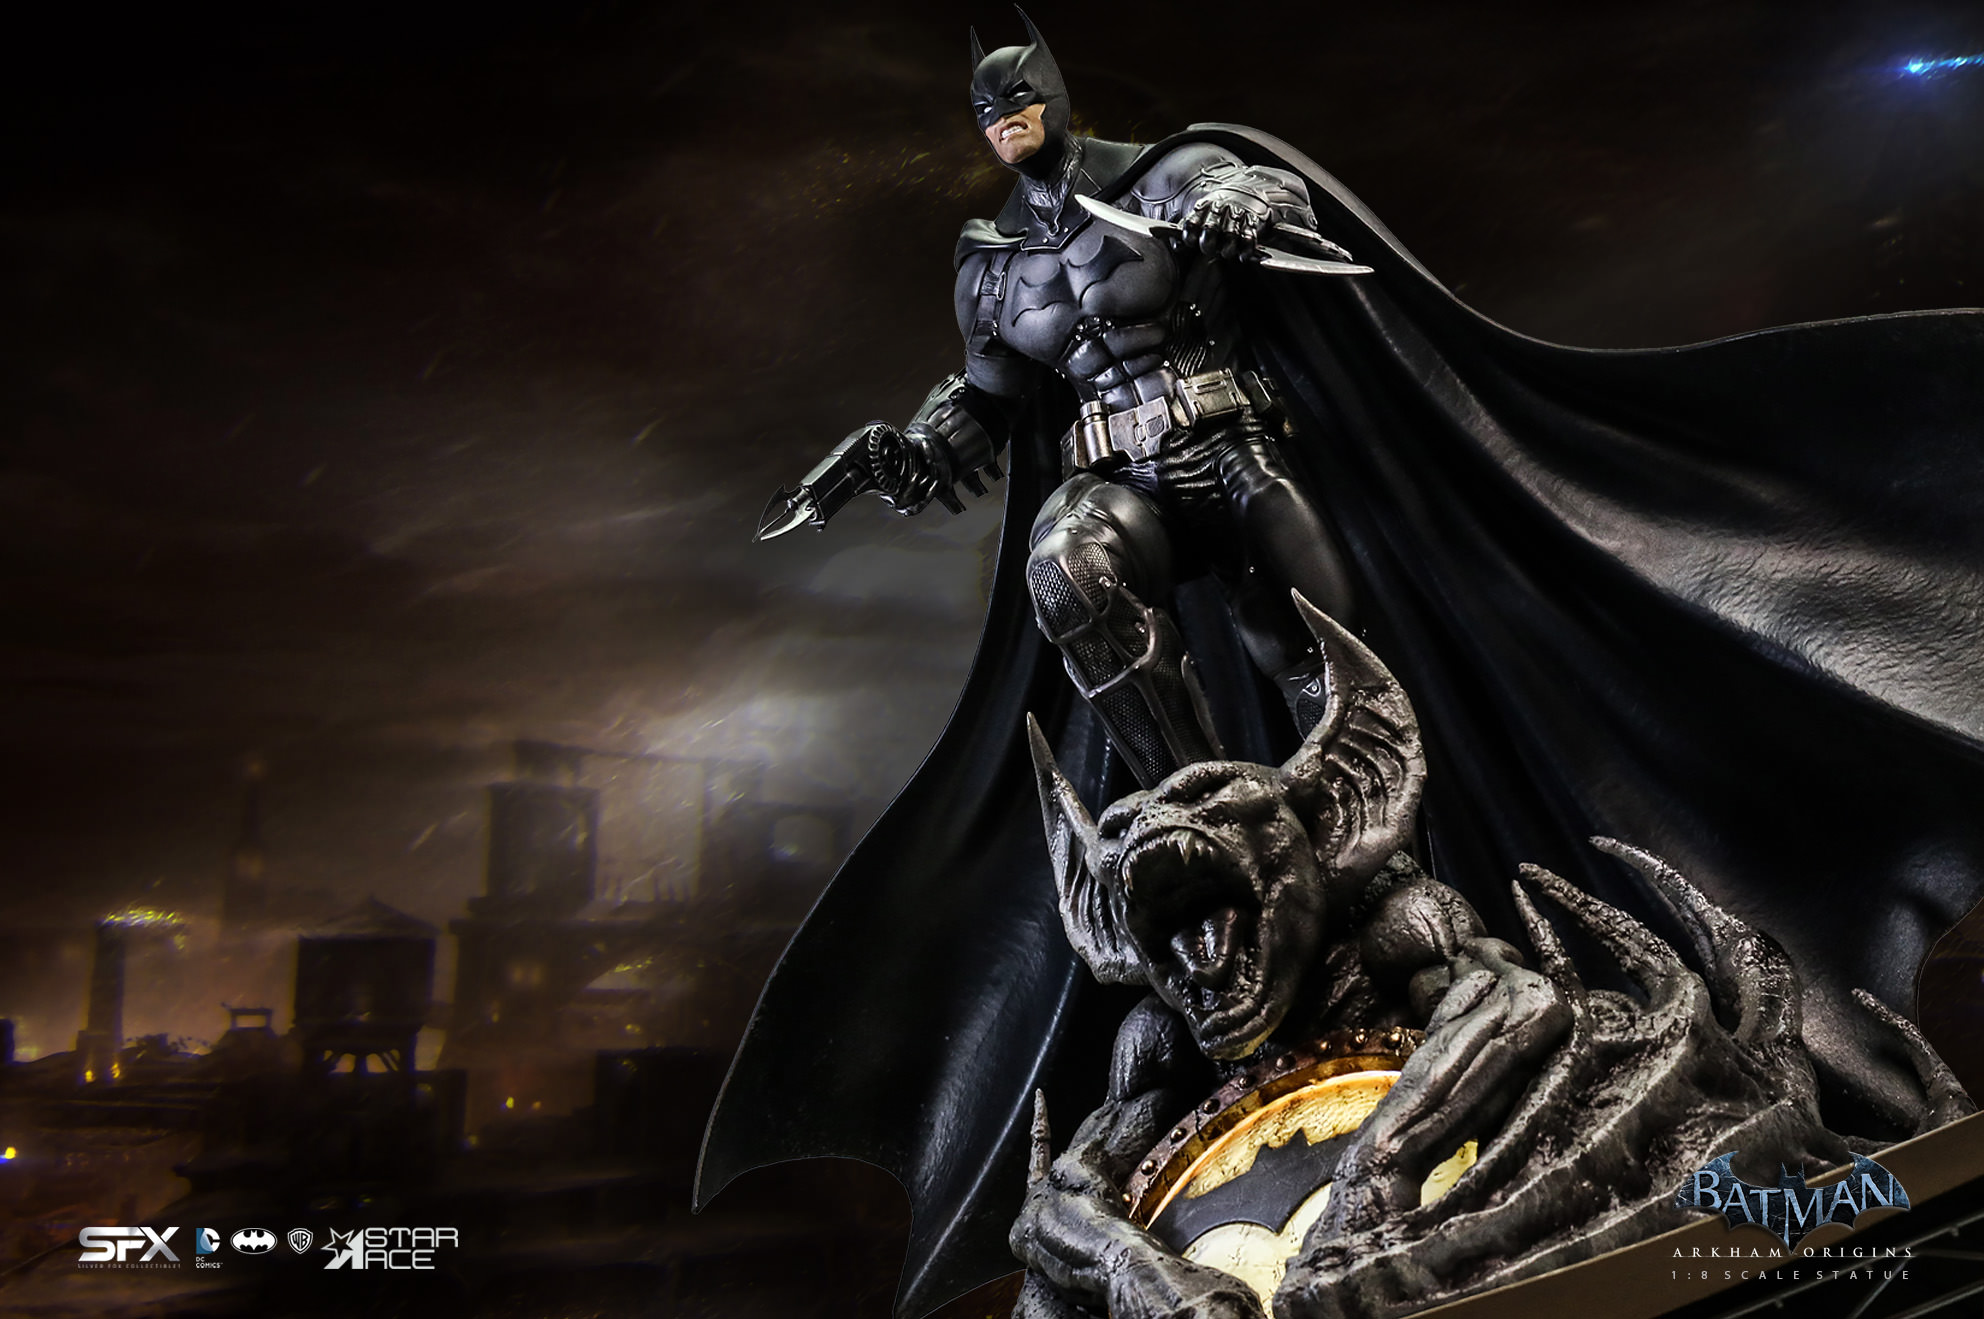 Batman Arkham Origins Exclusive Edition (Prototype Shown) View 18